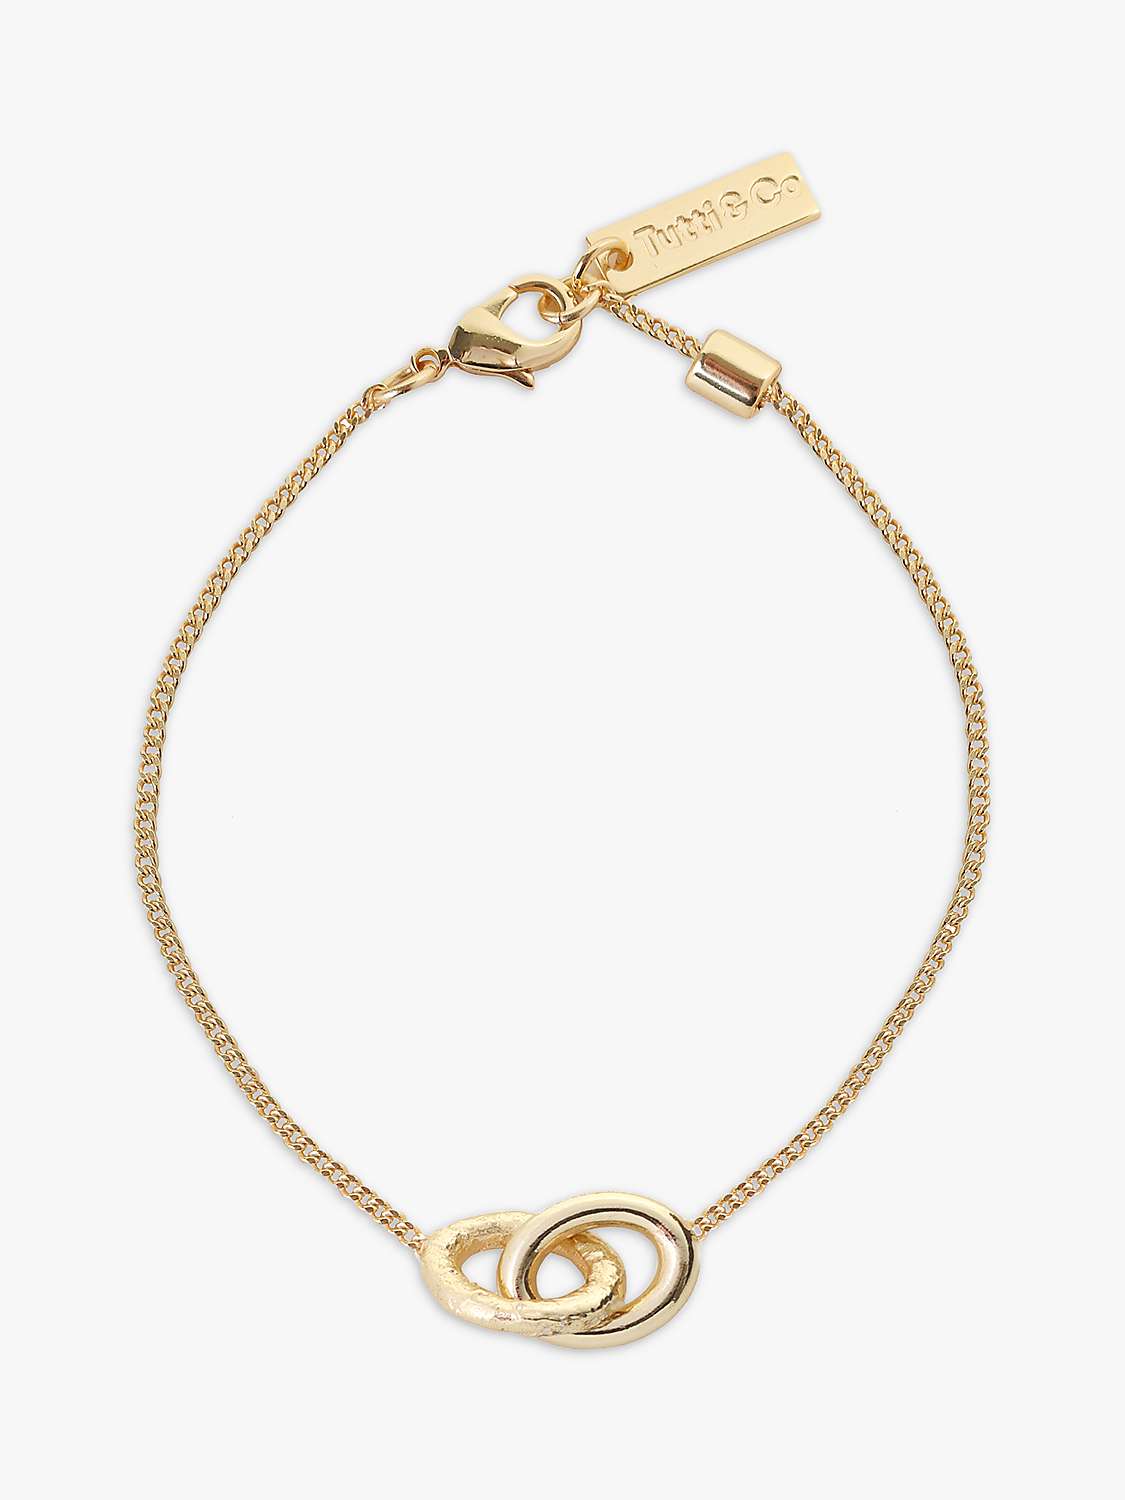 Buy Tutti & Co Daze Double Link Chain Bracelet Online at johnlewis.com